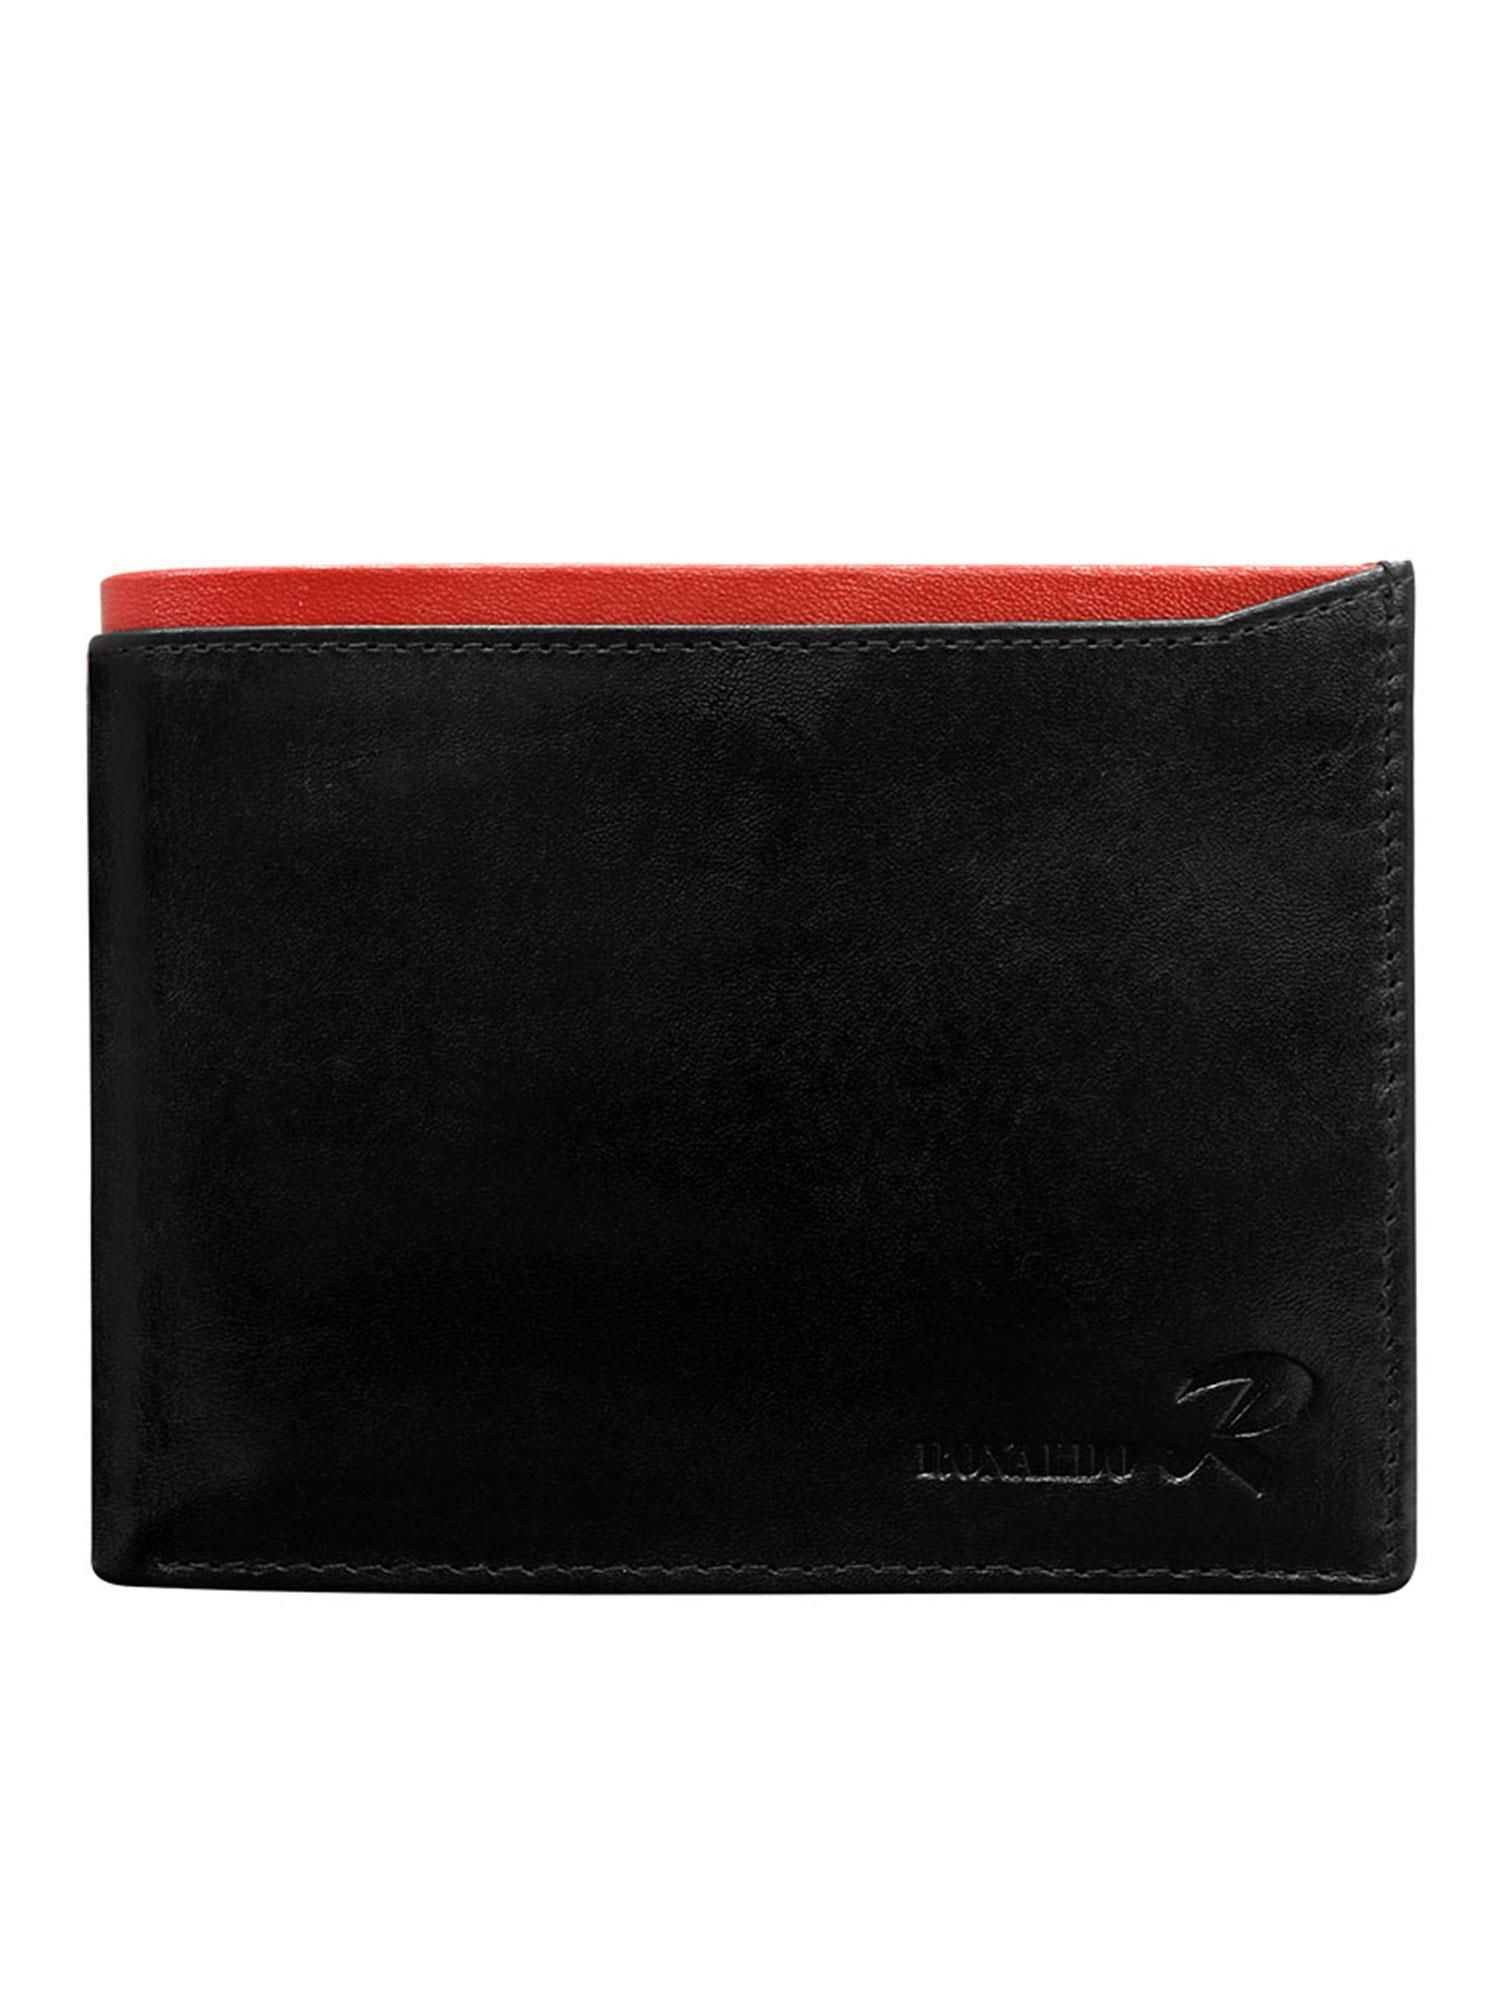 Peněženka CE PR černá a červená jedna velikost model 17355400 - FPrice